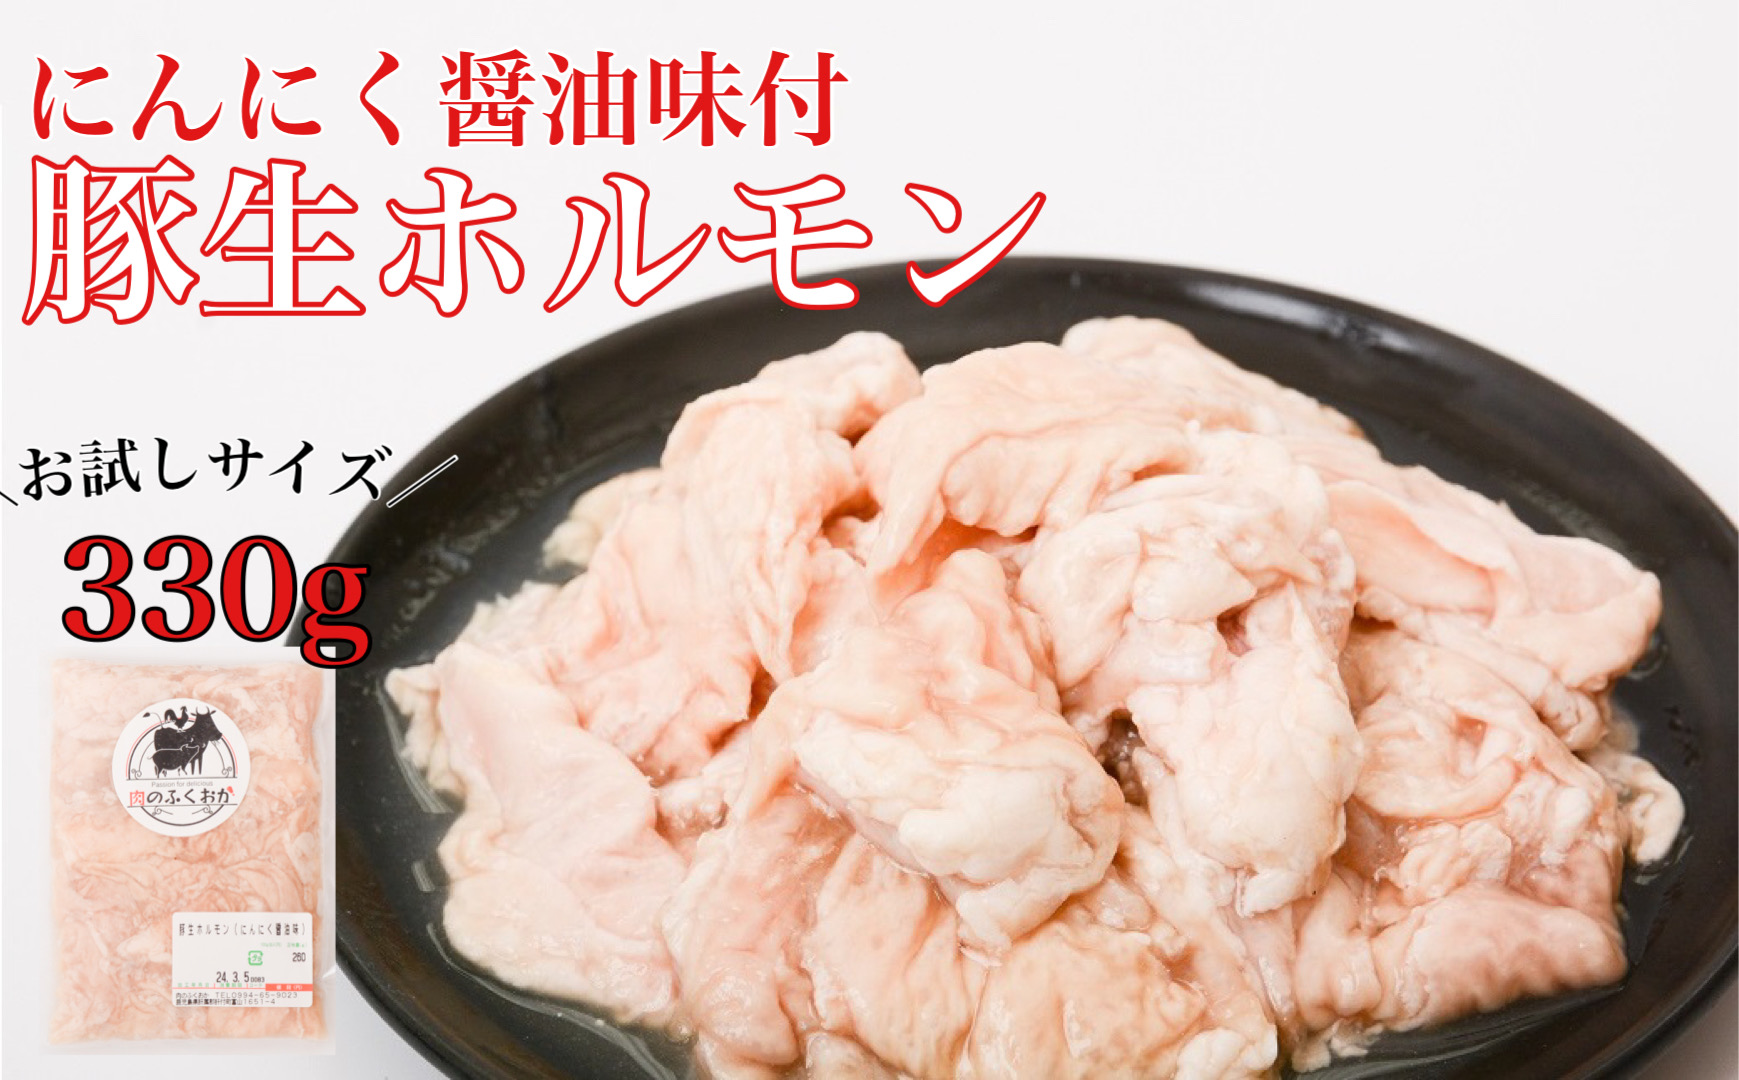 豚生ホルモンにんにく醤油味付(約330g)